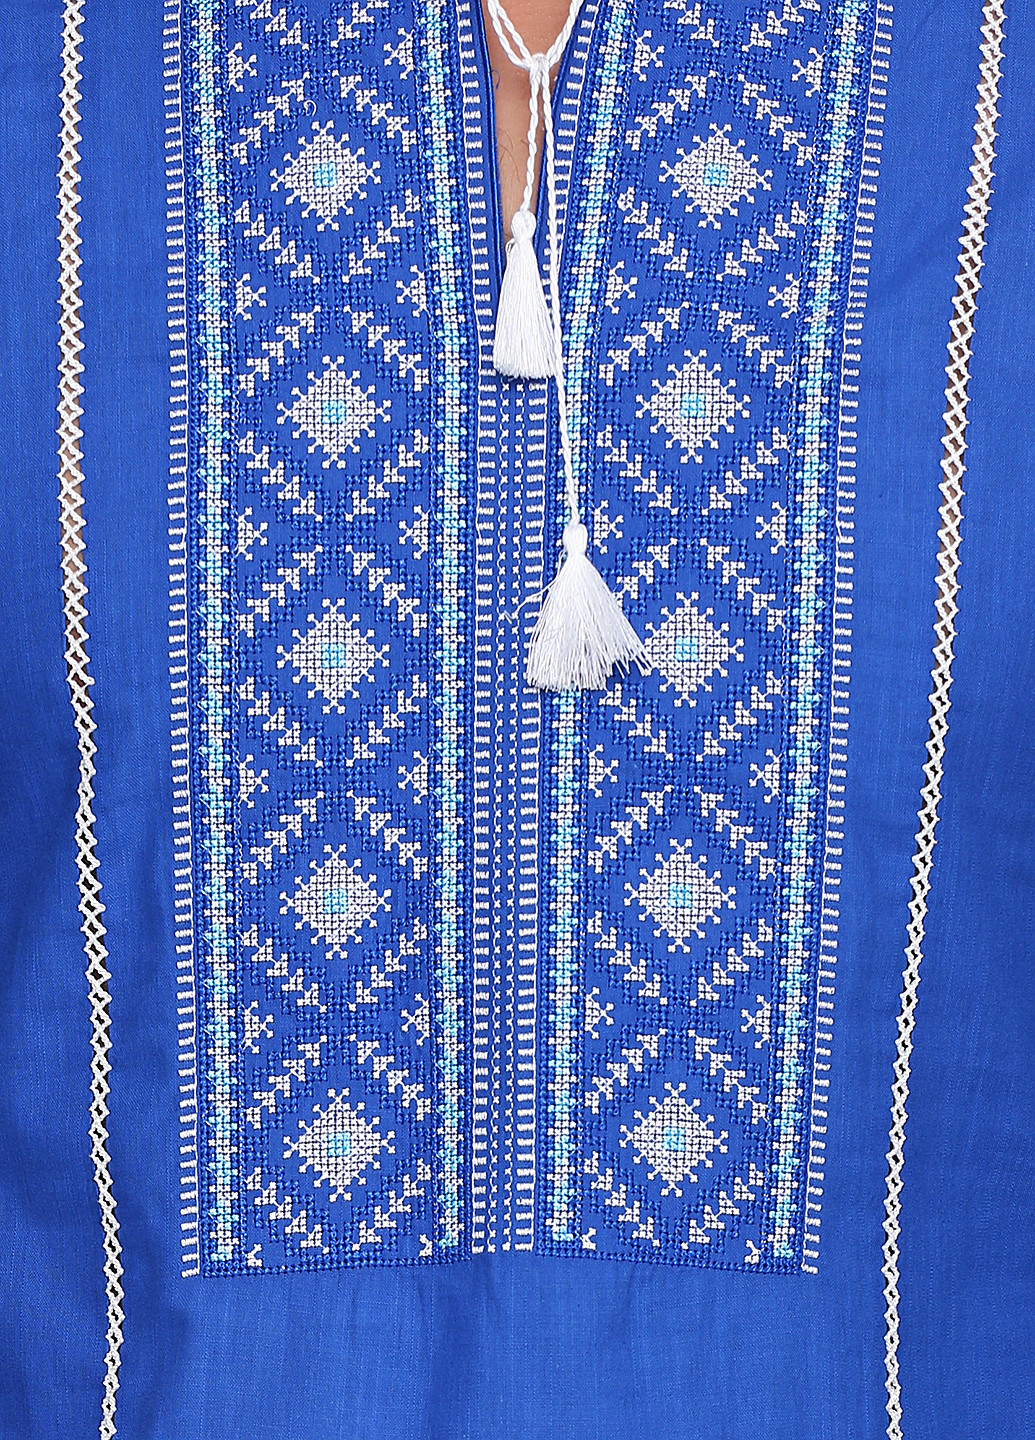 Вышиванка ЕтноМодерн рубашка (150530273)